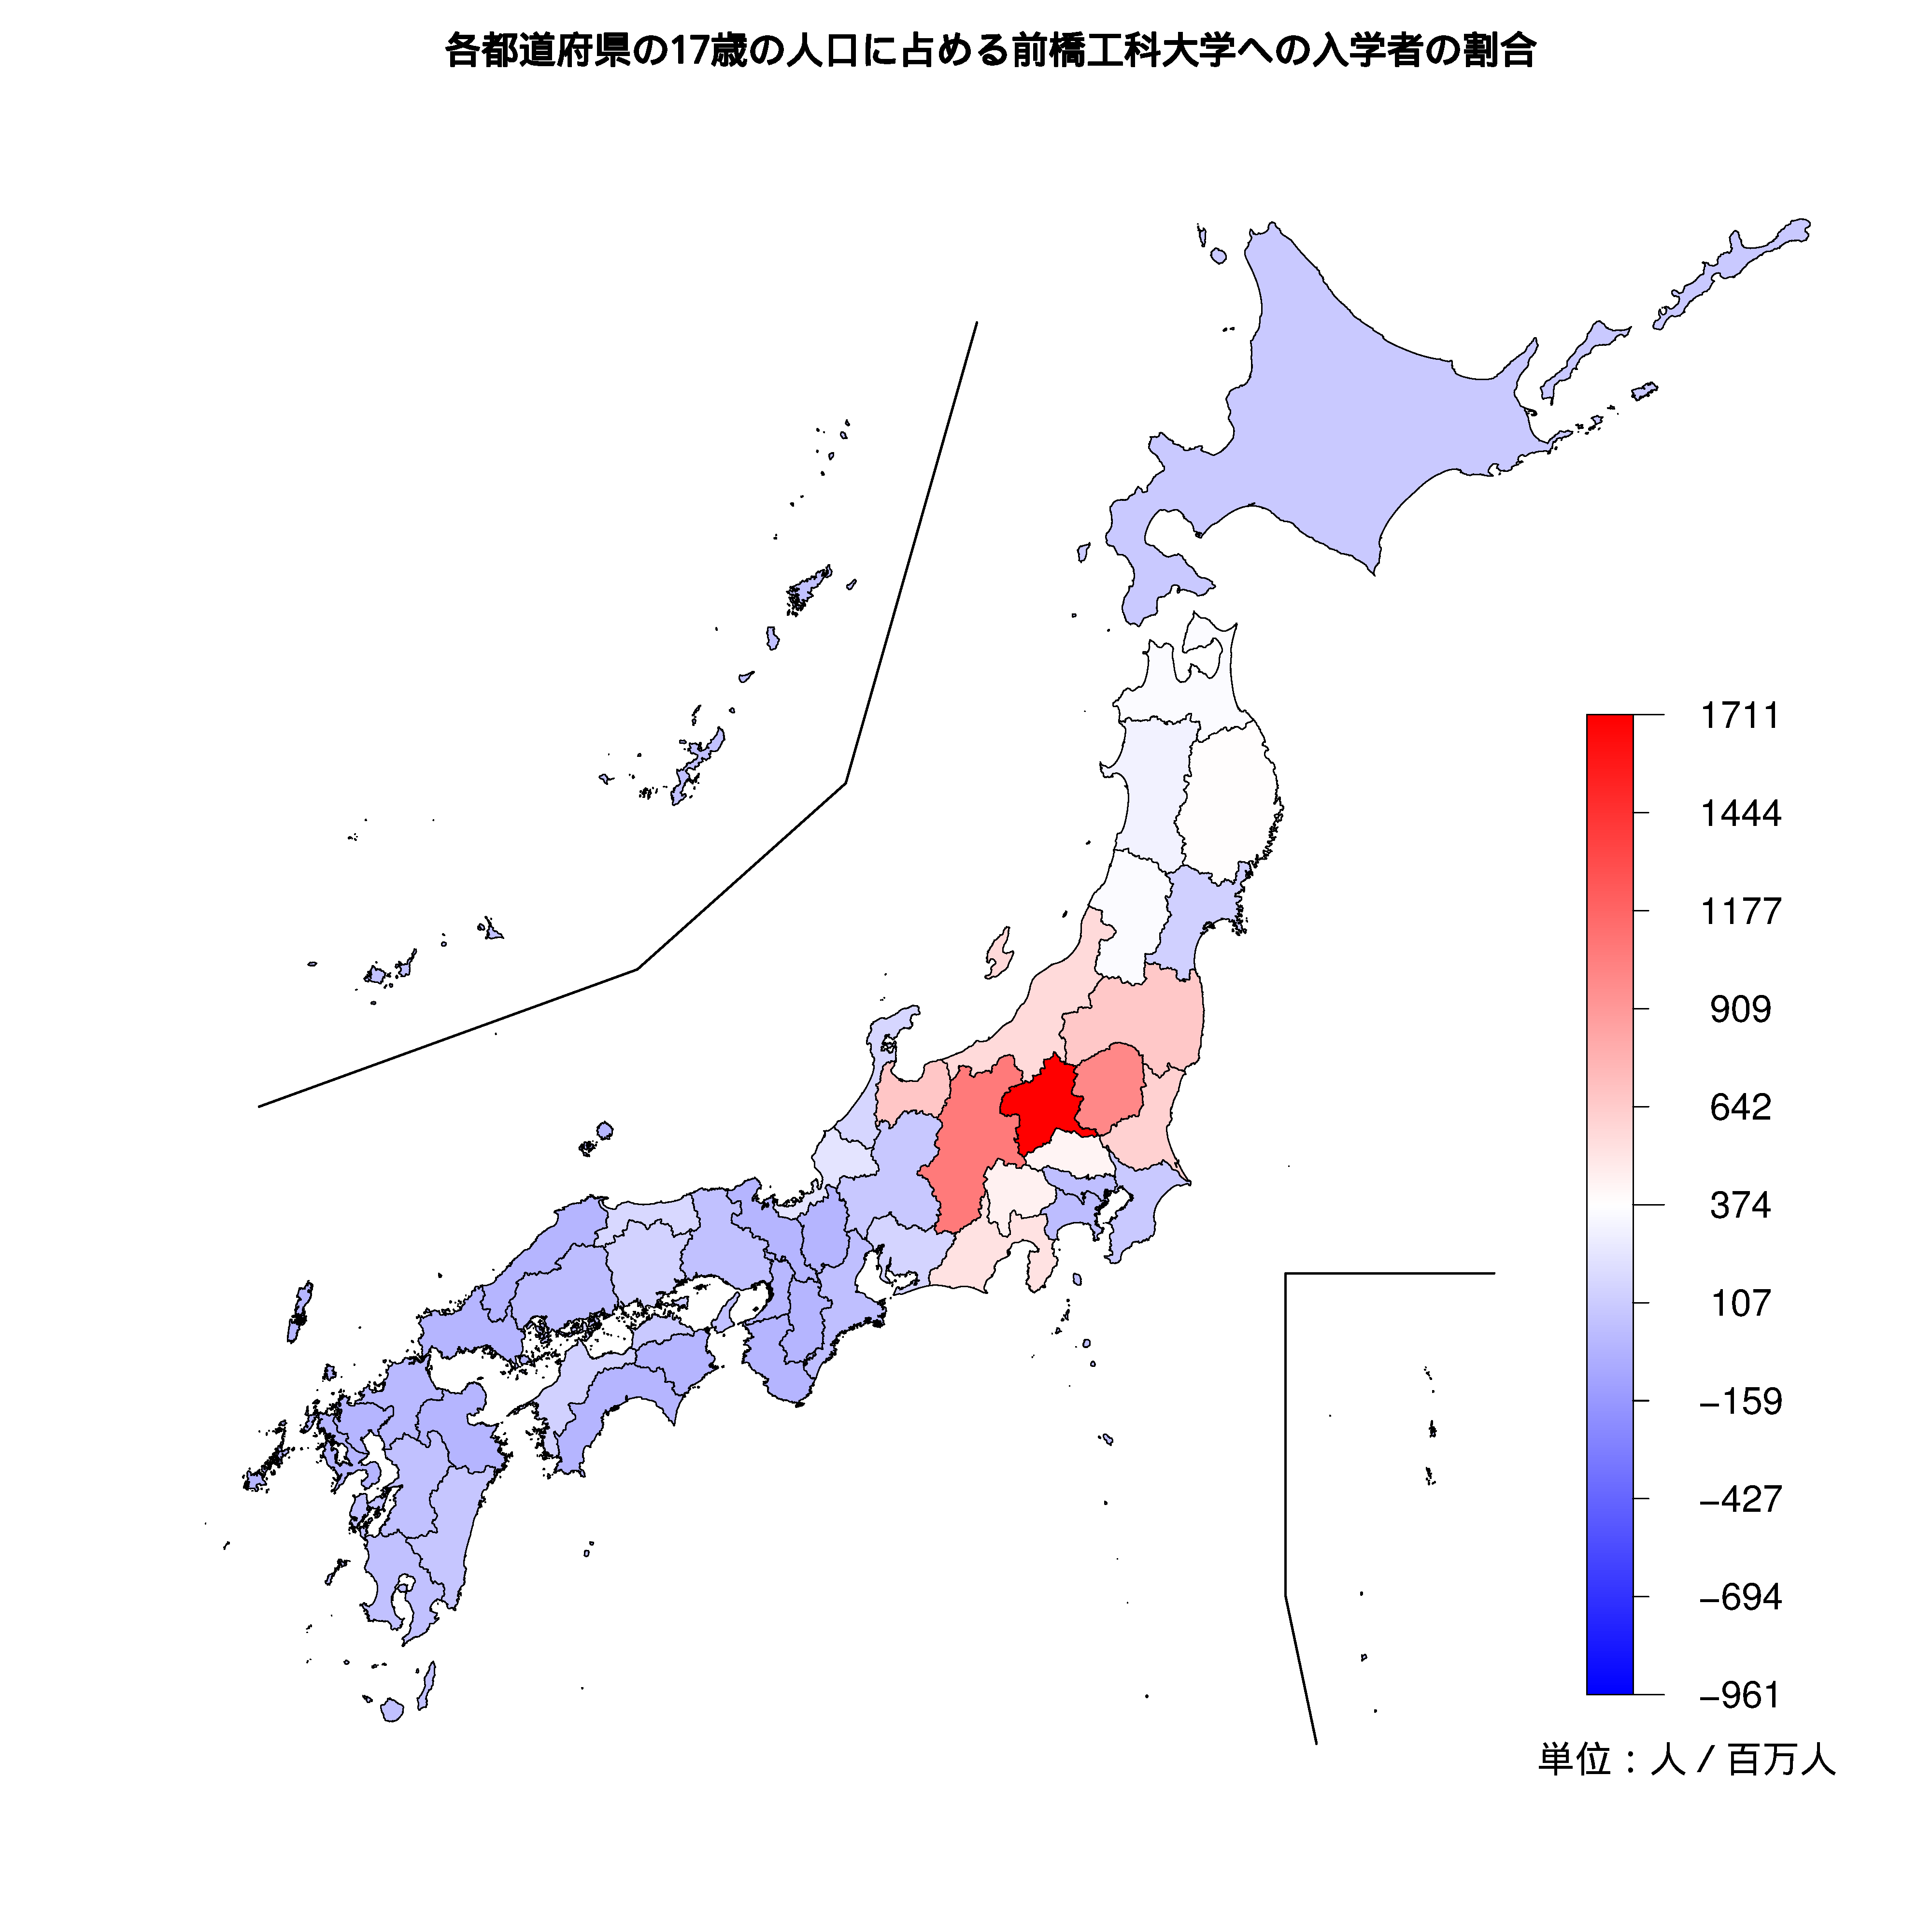 前橋工科大学への入学者が多い都道府県の色分け地図